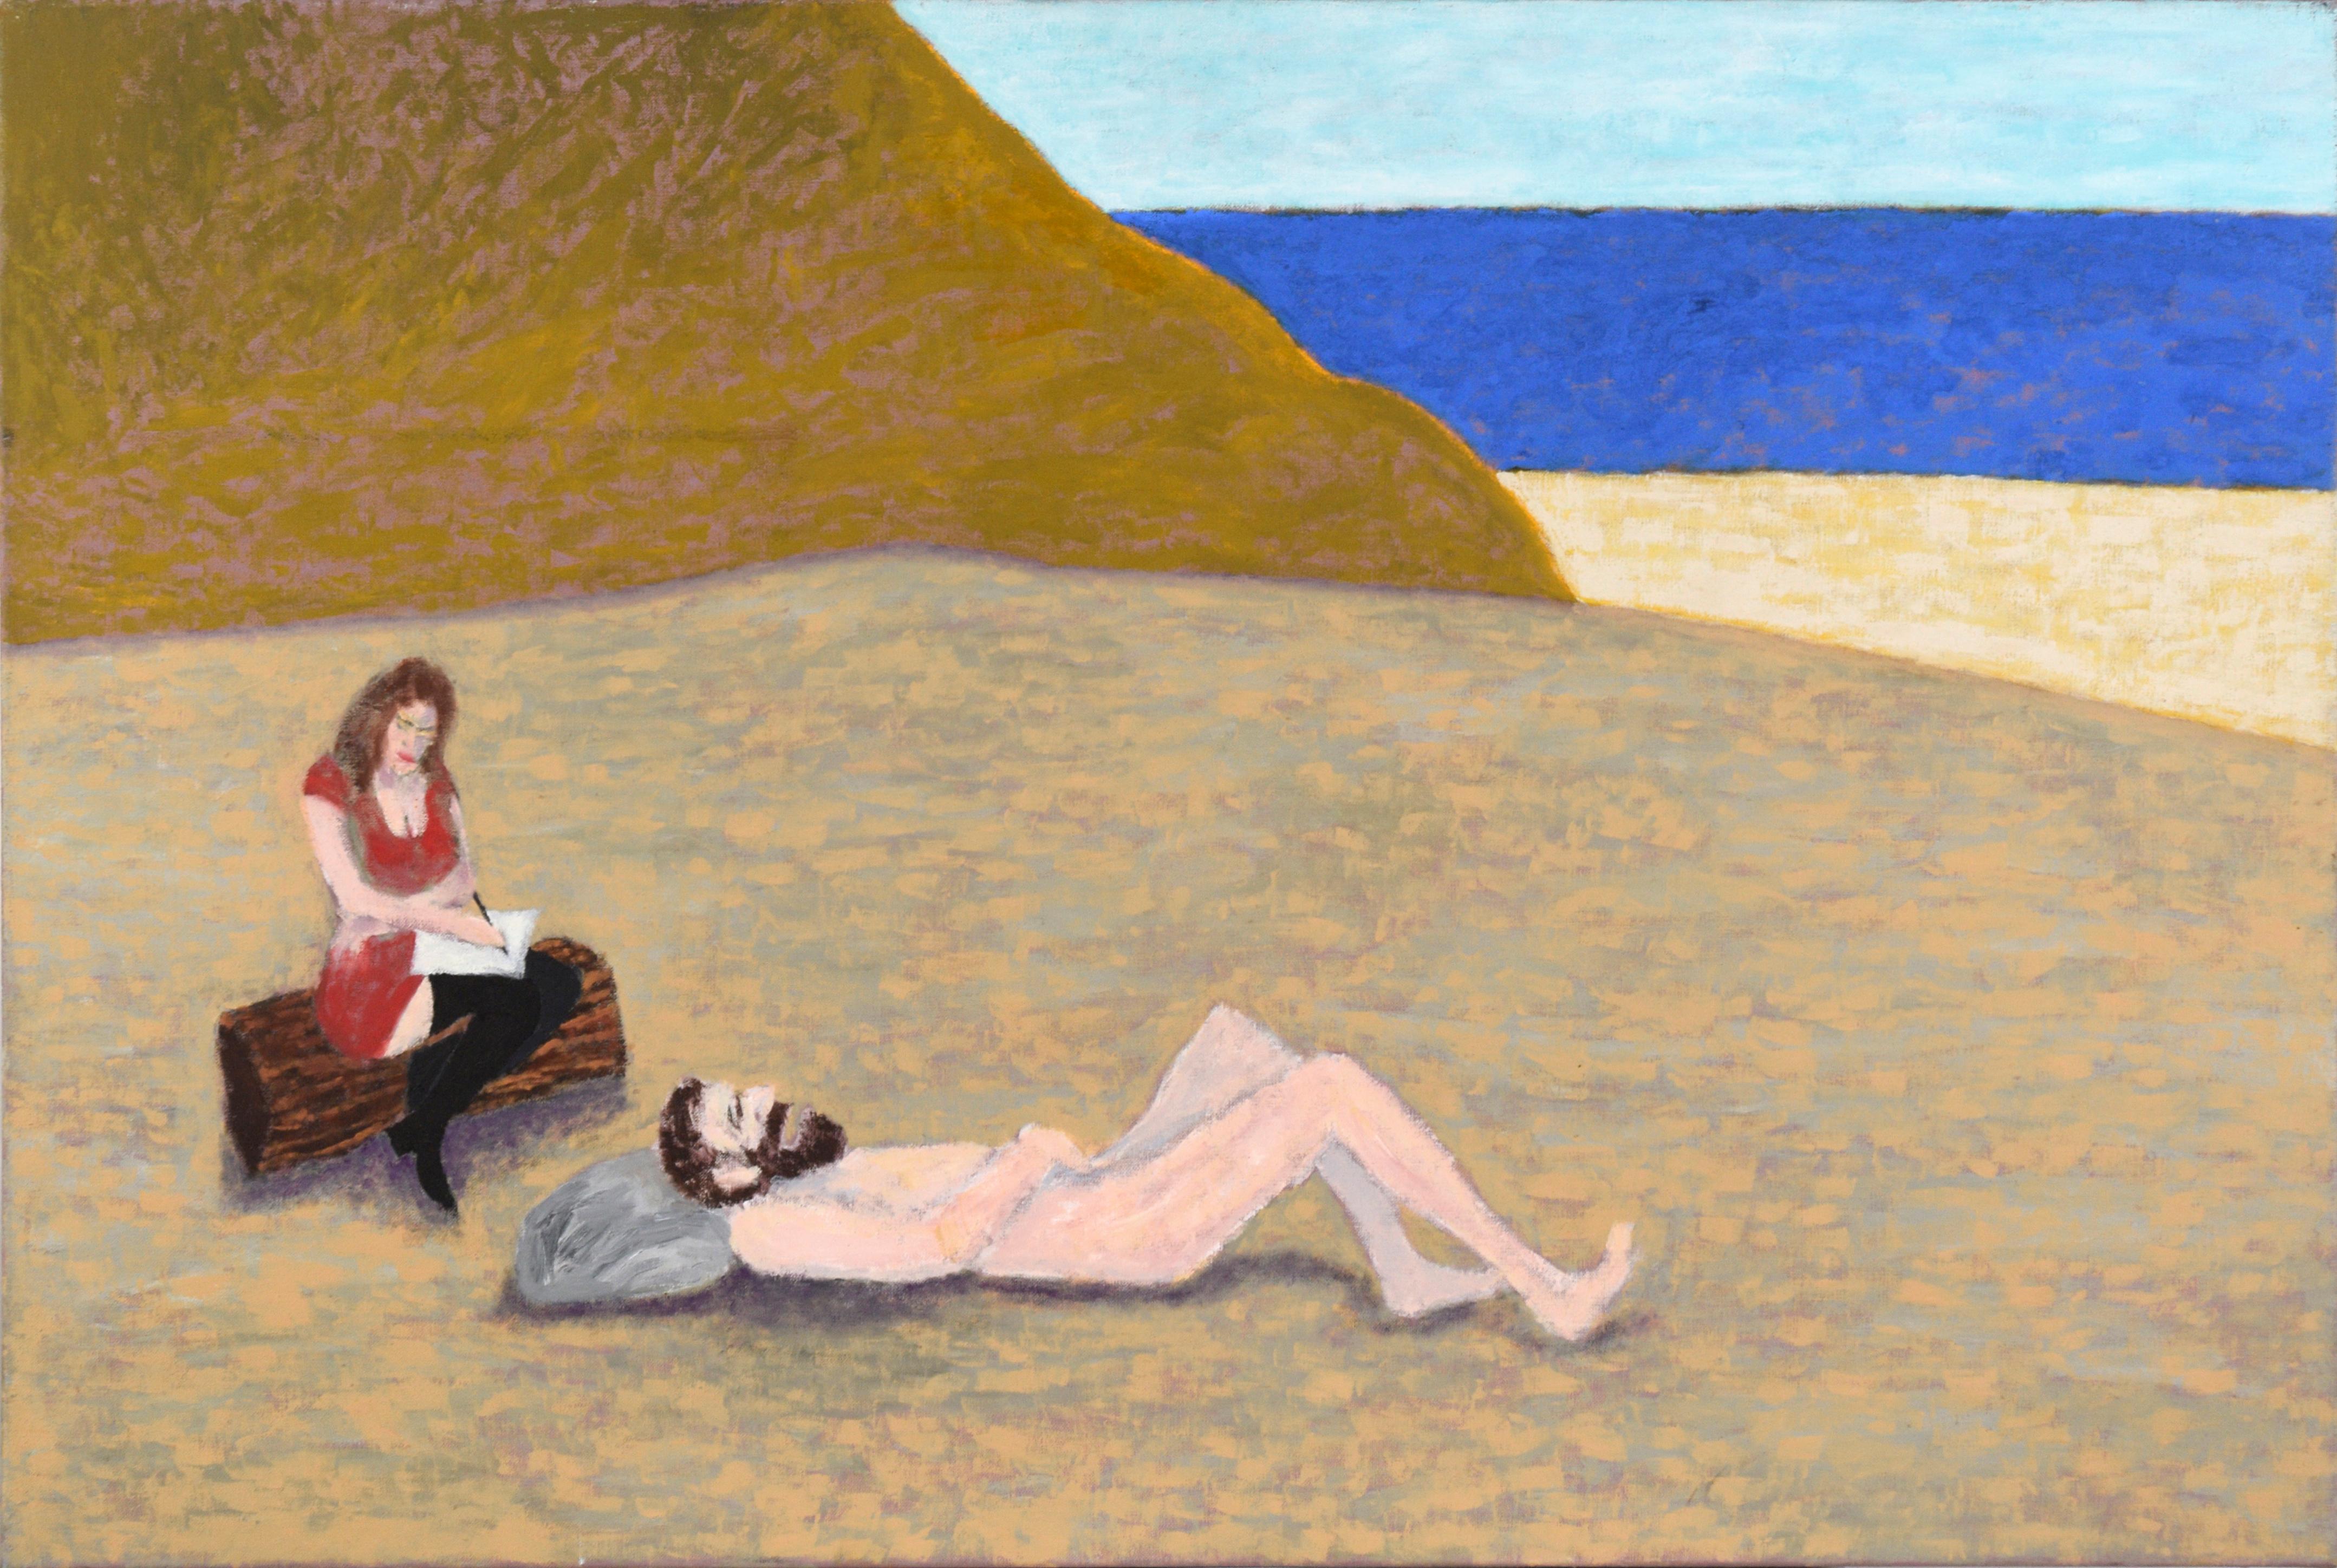 Michael Pauker  Landscape Painting – Artist's Dream VII - "The Talking Cure", Zeitgenössisches surreales Self-Portrait